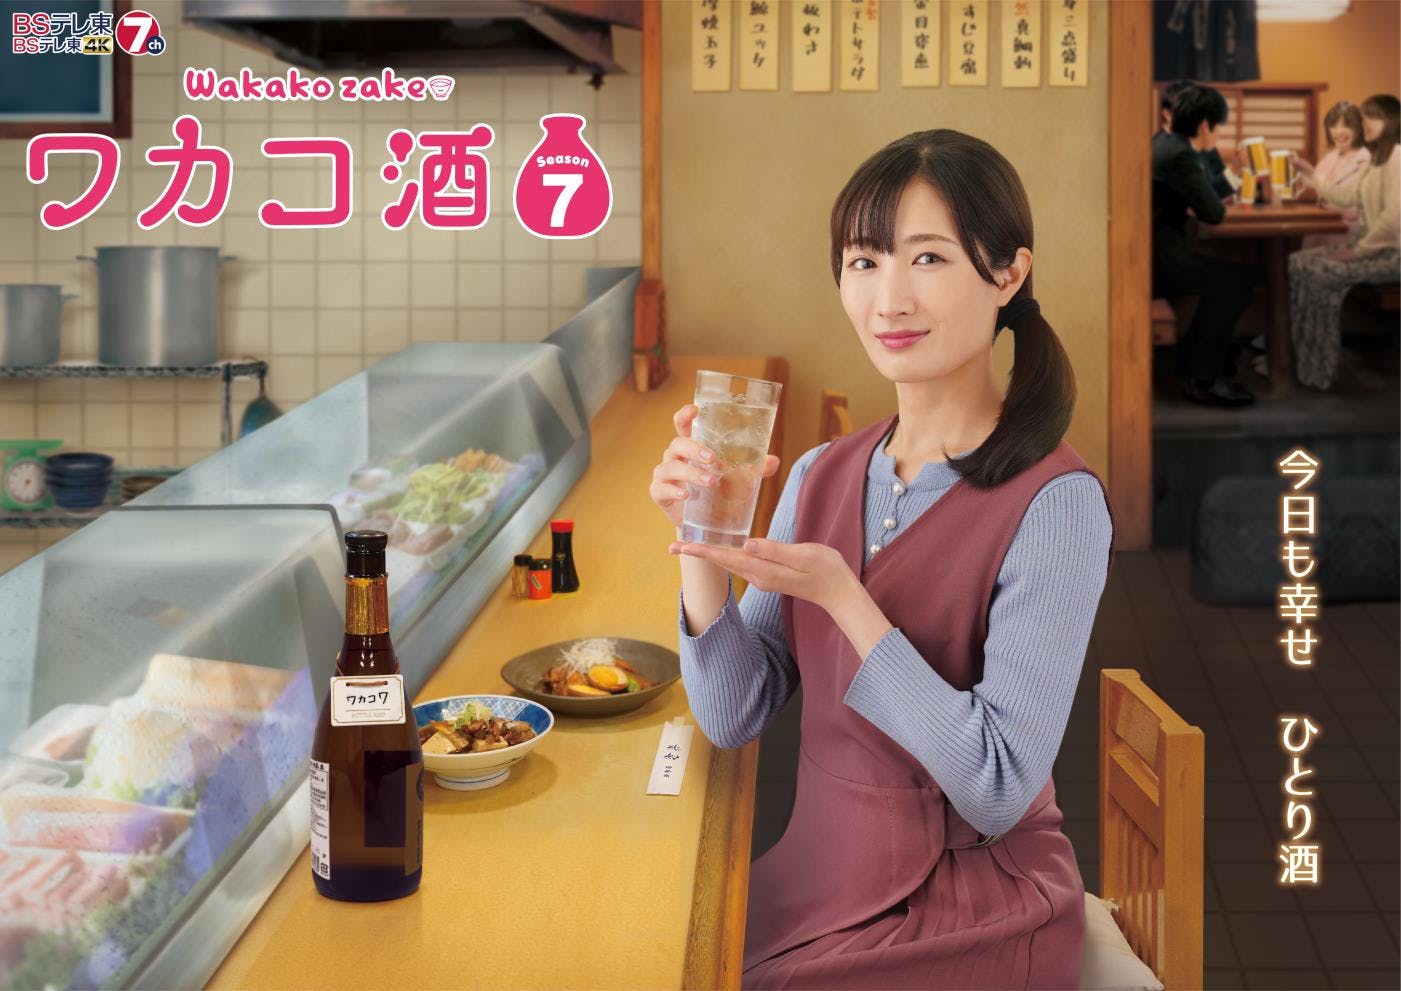 ¡La nueva serie tan esperada! ¡El drama televisivo “Wakako Sake Season 7” comienza a la medianoche del 3 de julio (lunes)!